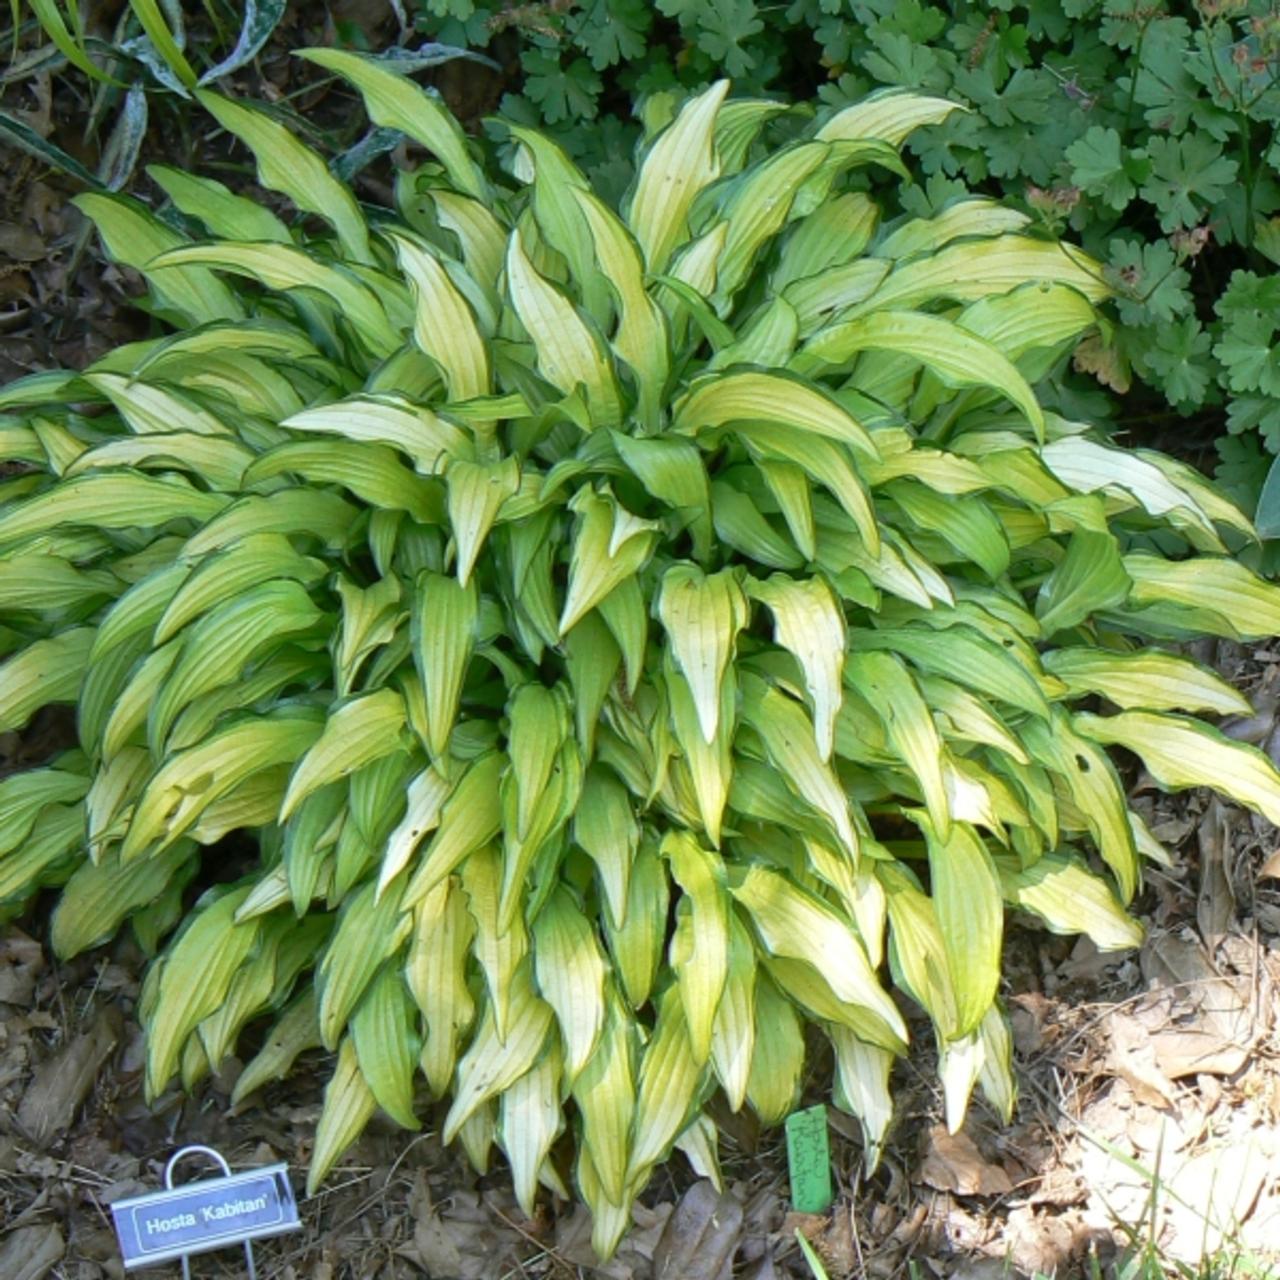 Hosta 'Kabitan' plant